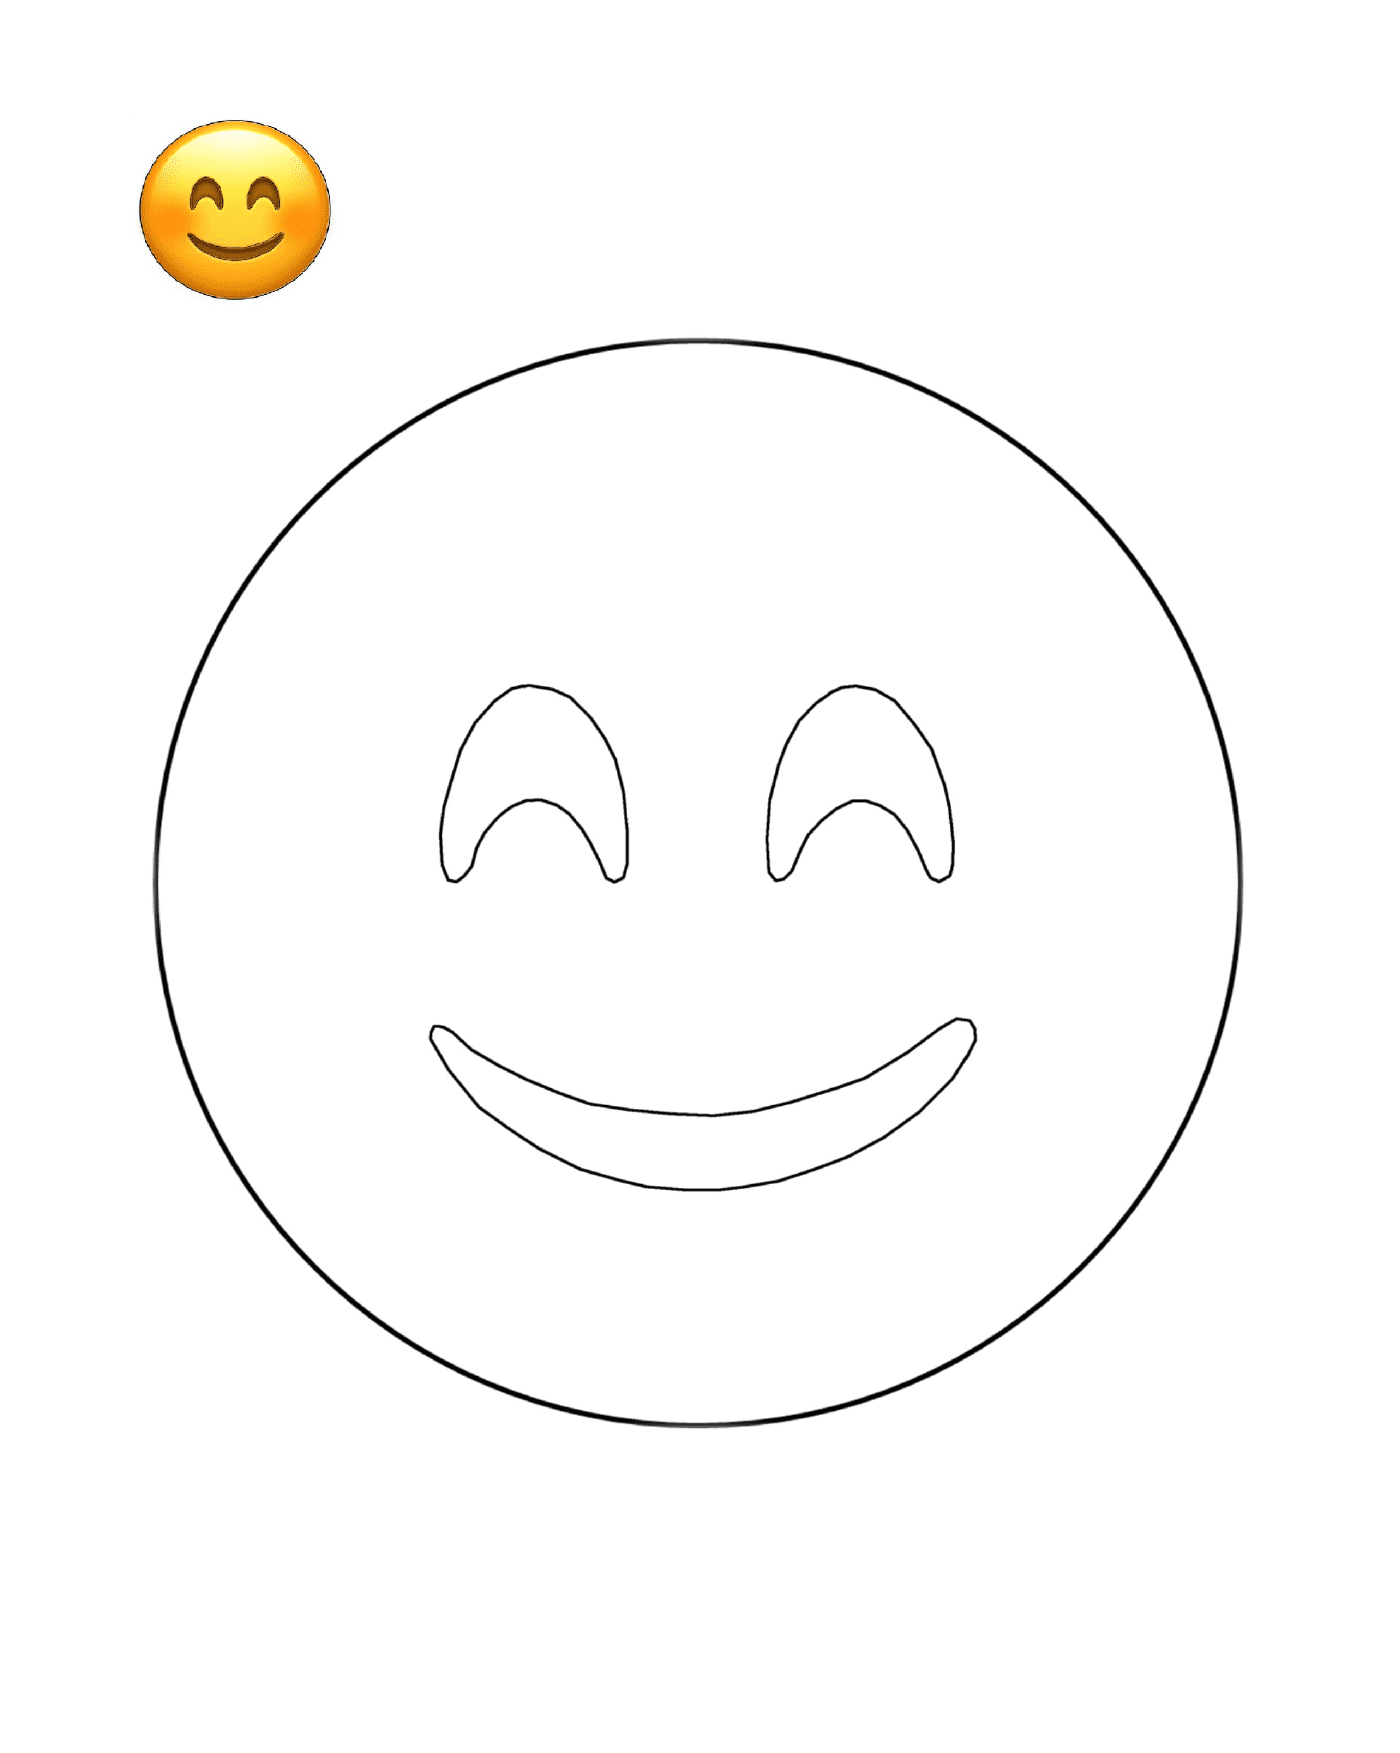  Un volto sorridente è disegnato 